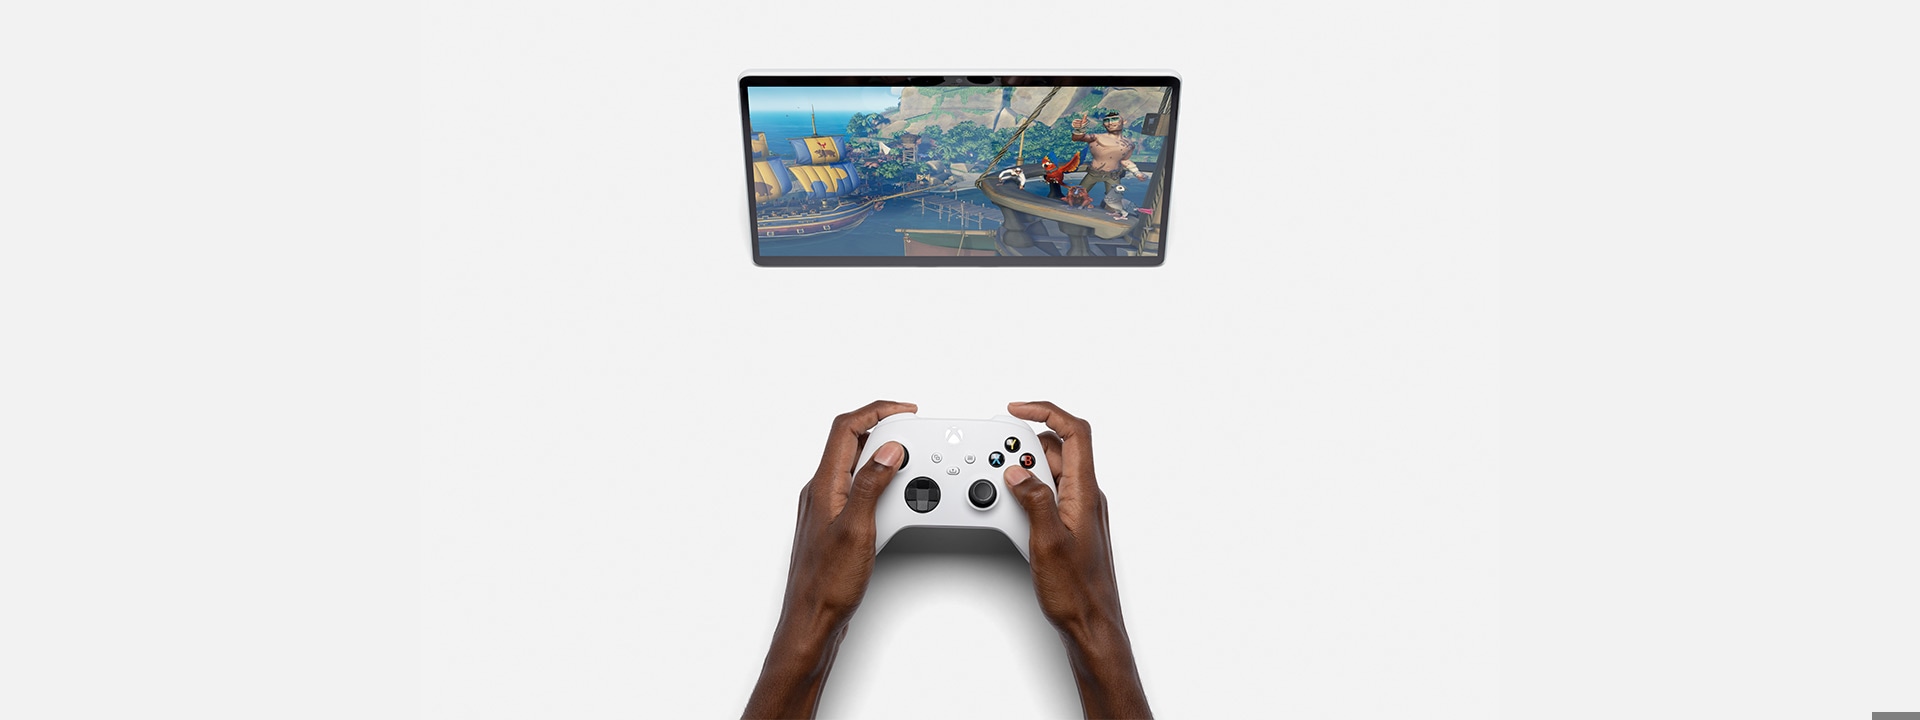 Surface Pro X razem z aplikacją Xbox i kontrolerem Xbox